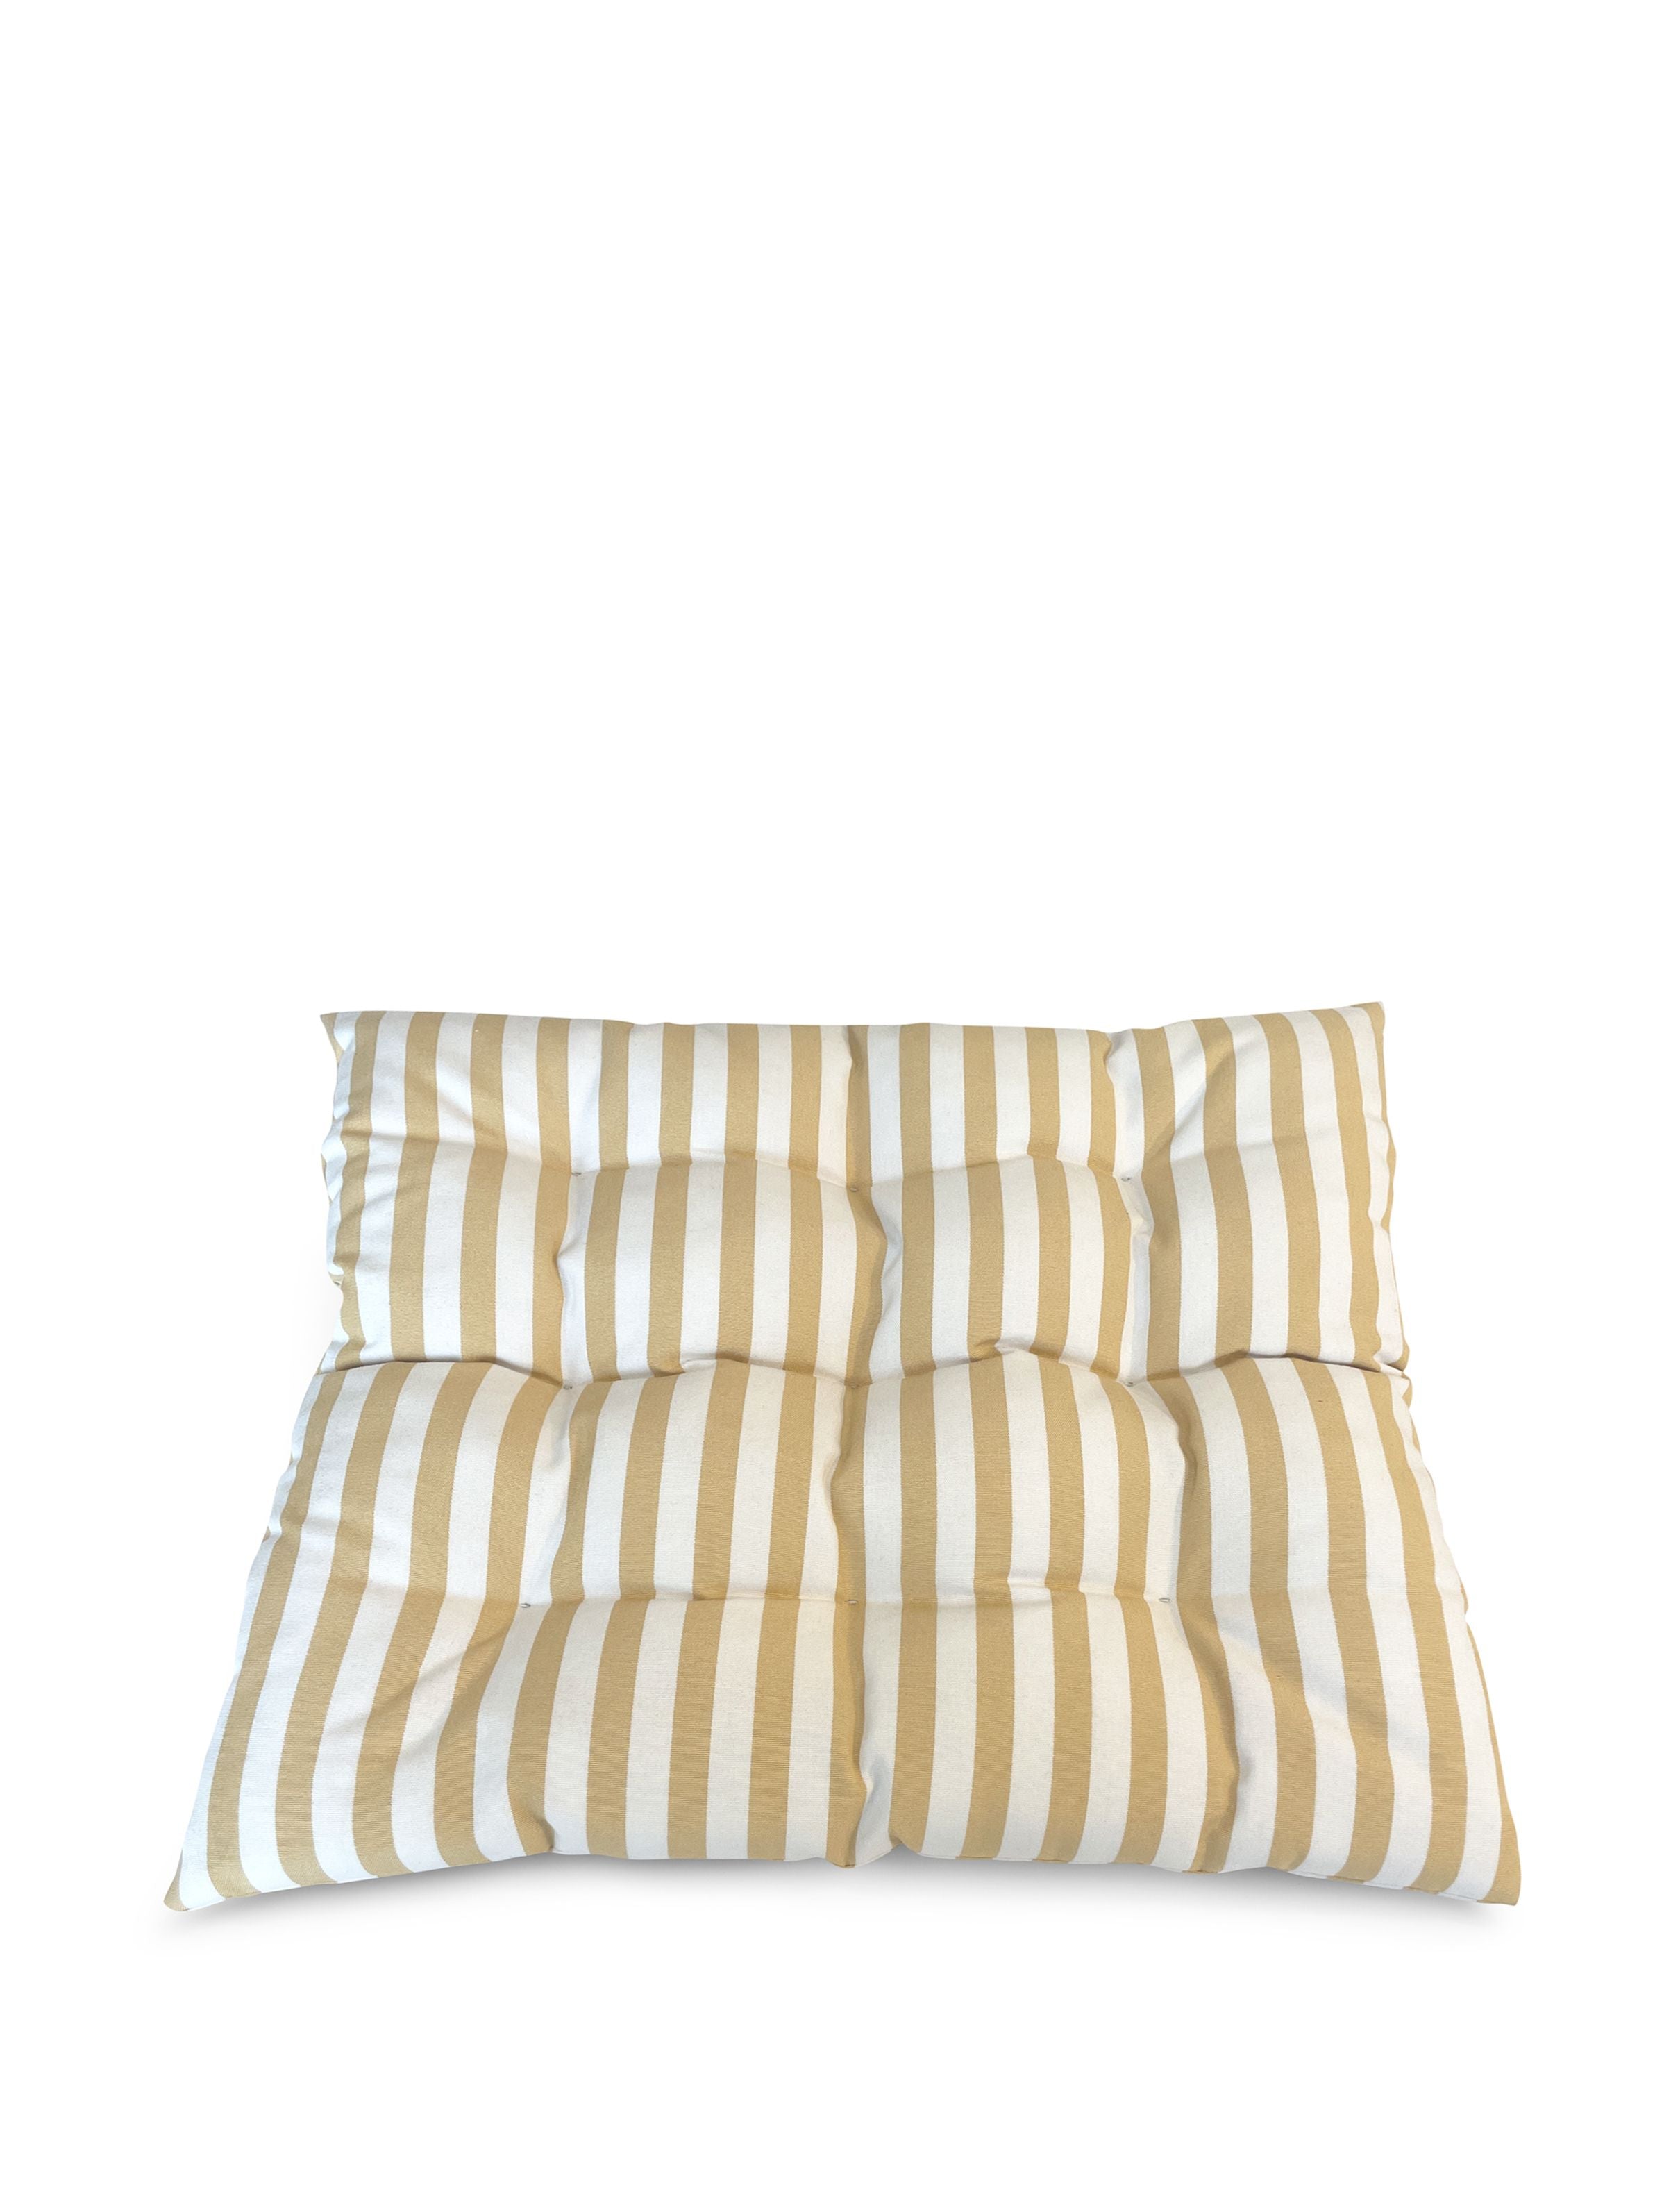 Skagerak Barriere Cushion 43x43 Cm, Golden Yellow Stripe